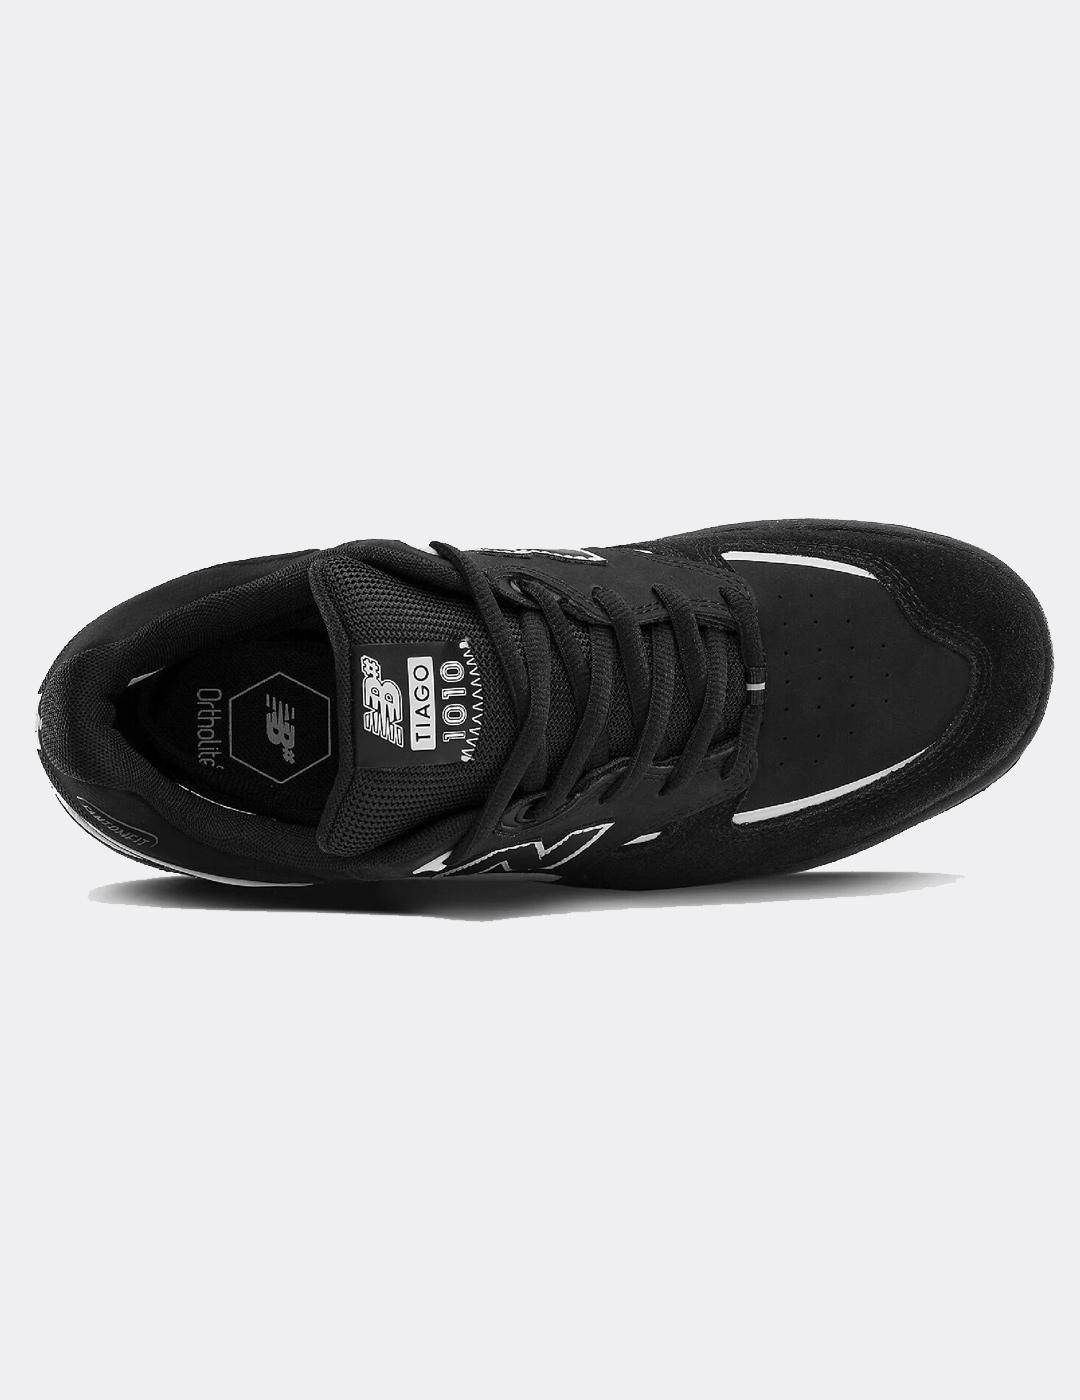 Zapatillas New Balance Numeric NM1010 - Black